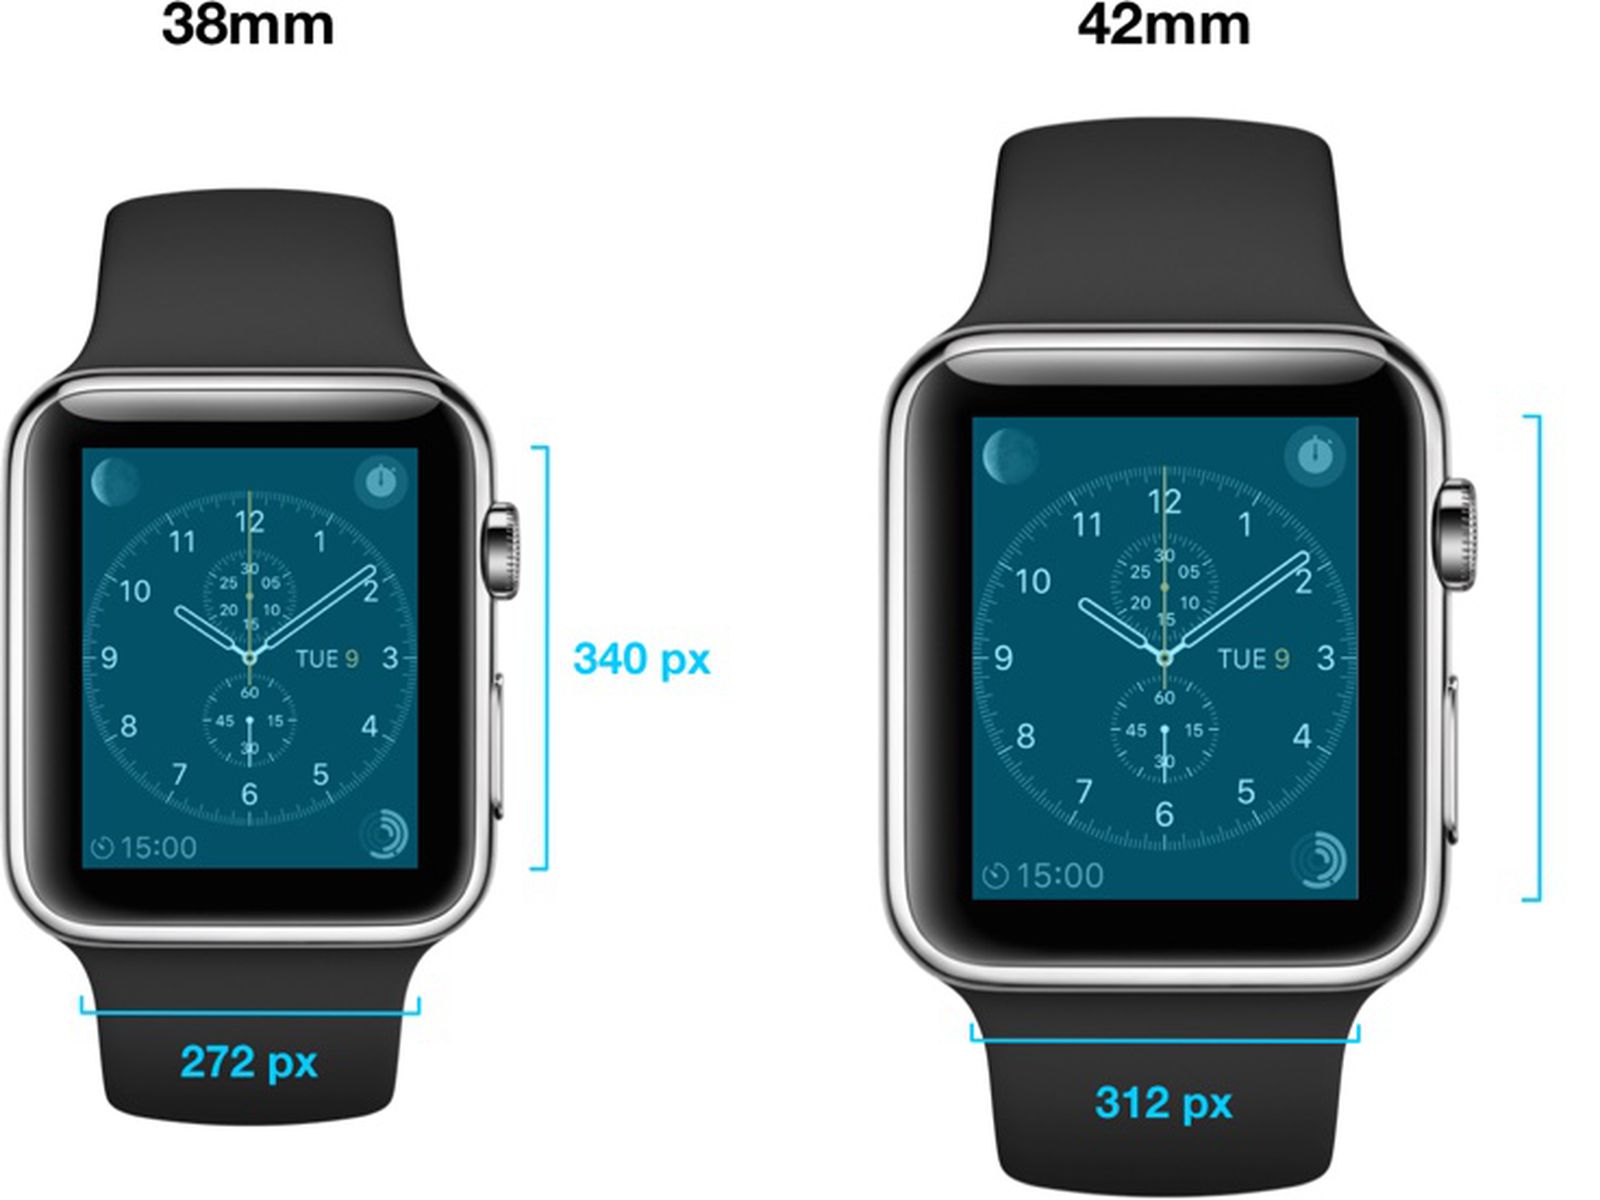 Apple watch 8 размеры. Apple watch 5 44 мм размер экрана. Эппл вотч 8 дисплей. Apple watch 8 45mm диагональ экрана. Apple watch 7 диагональ в сантиметрах.